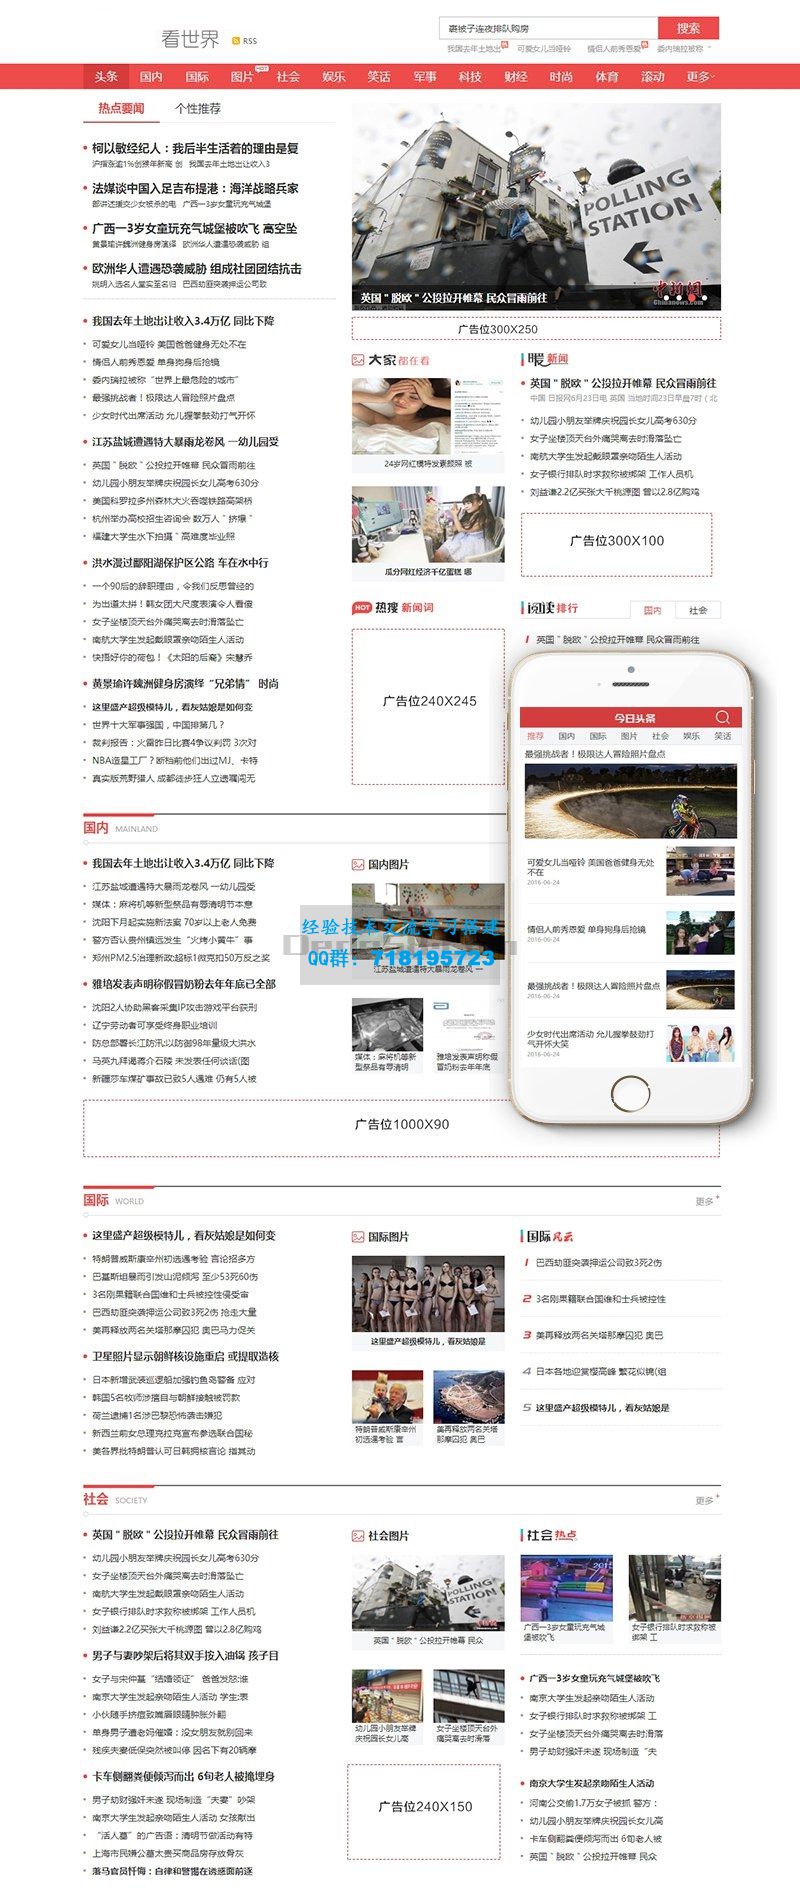     仿东方头条新闻资讯网站源码  dedecms织梦模板 (带手机端)
